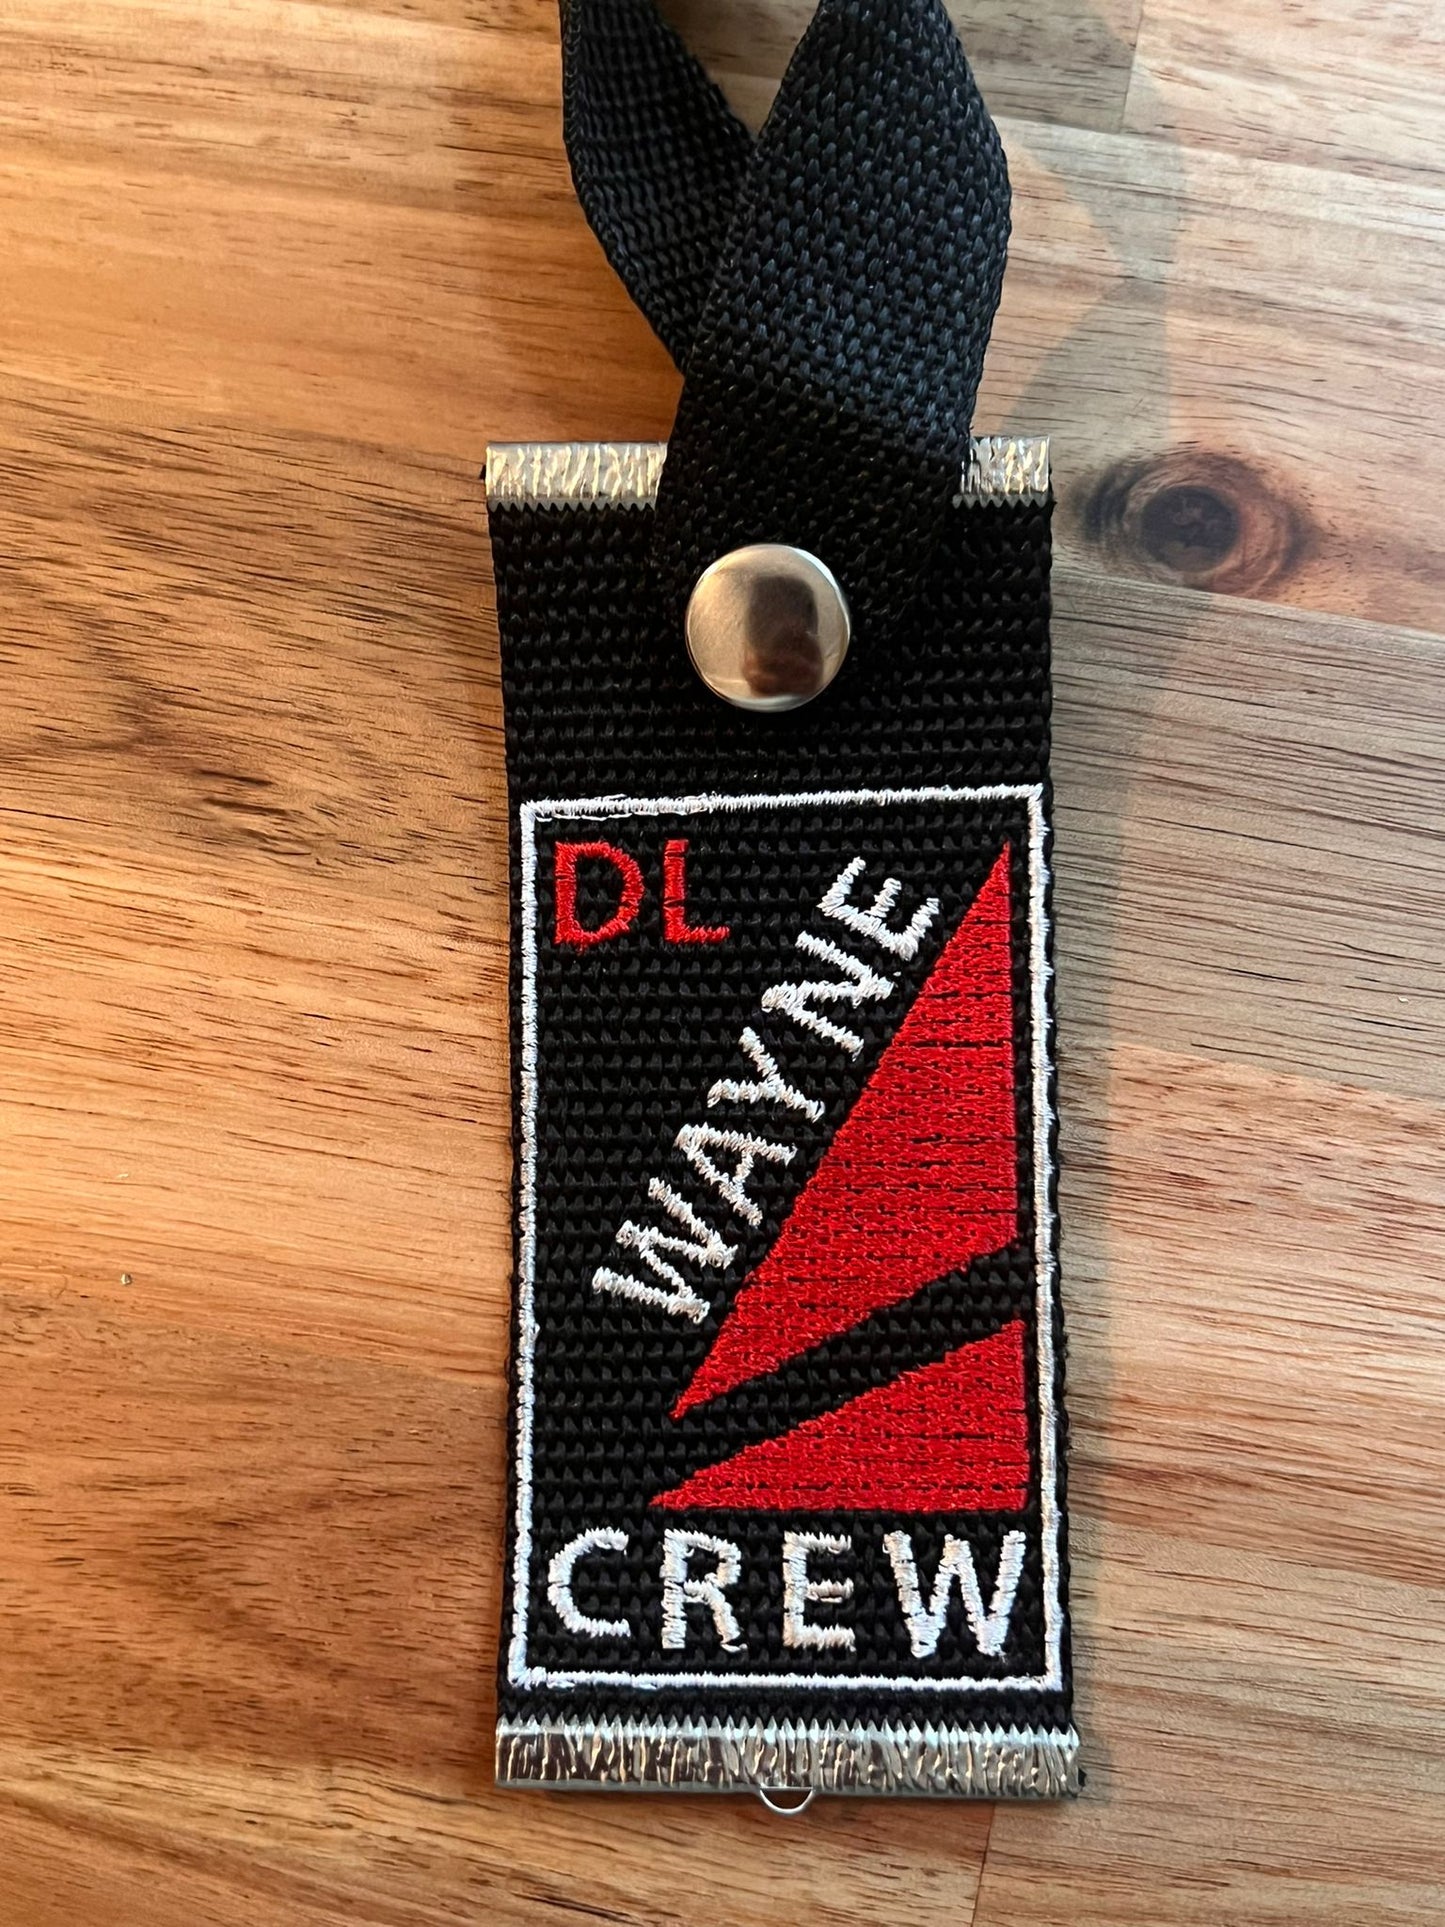 Delta Crew - WAYNE - Strap